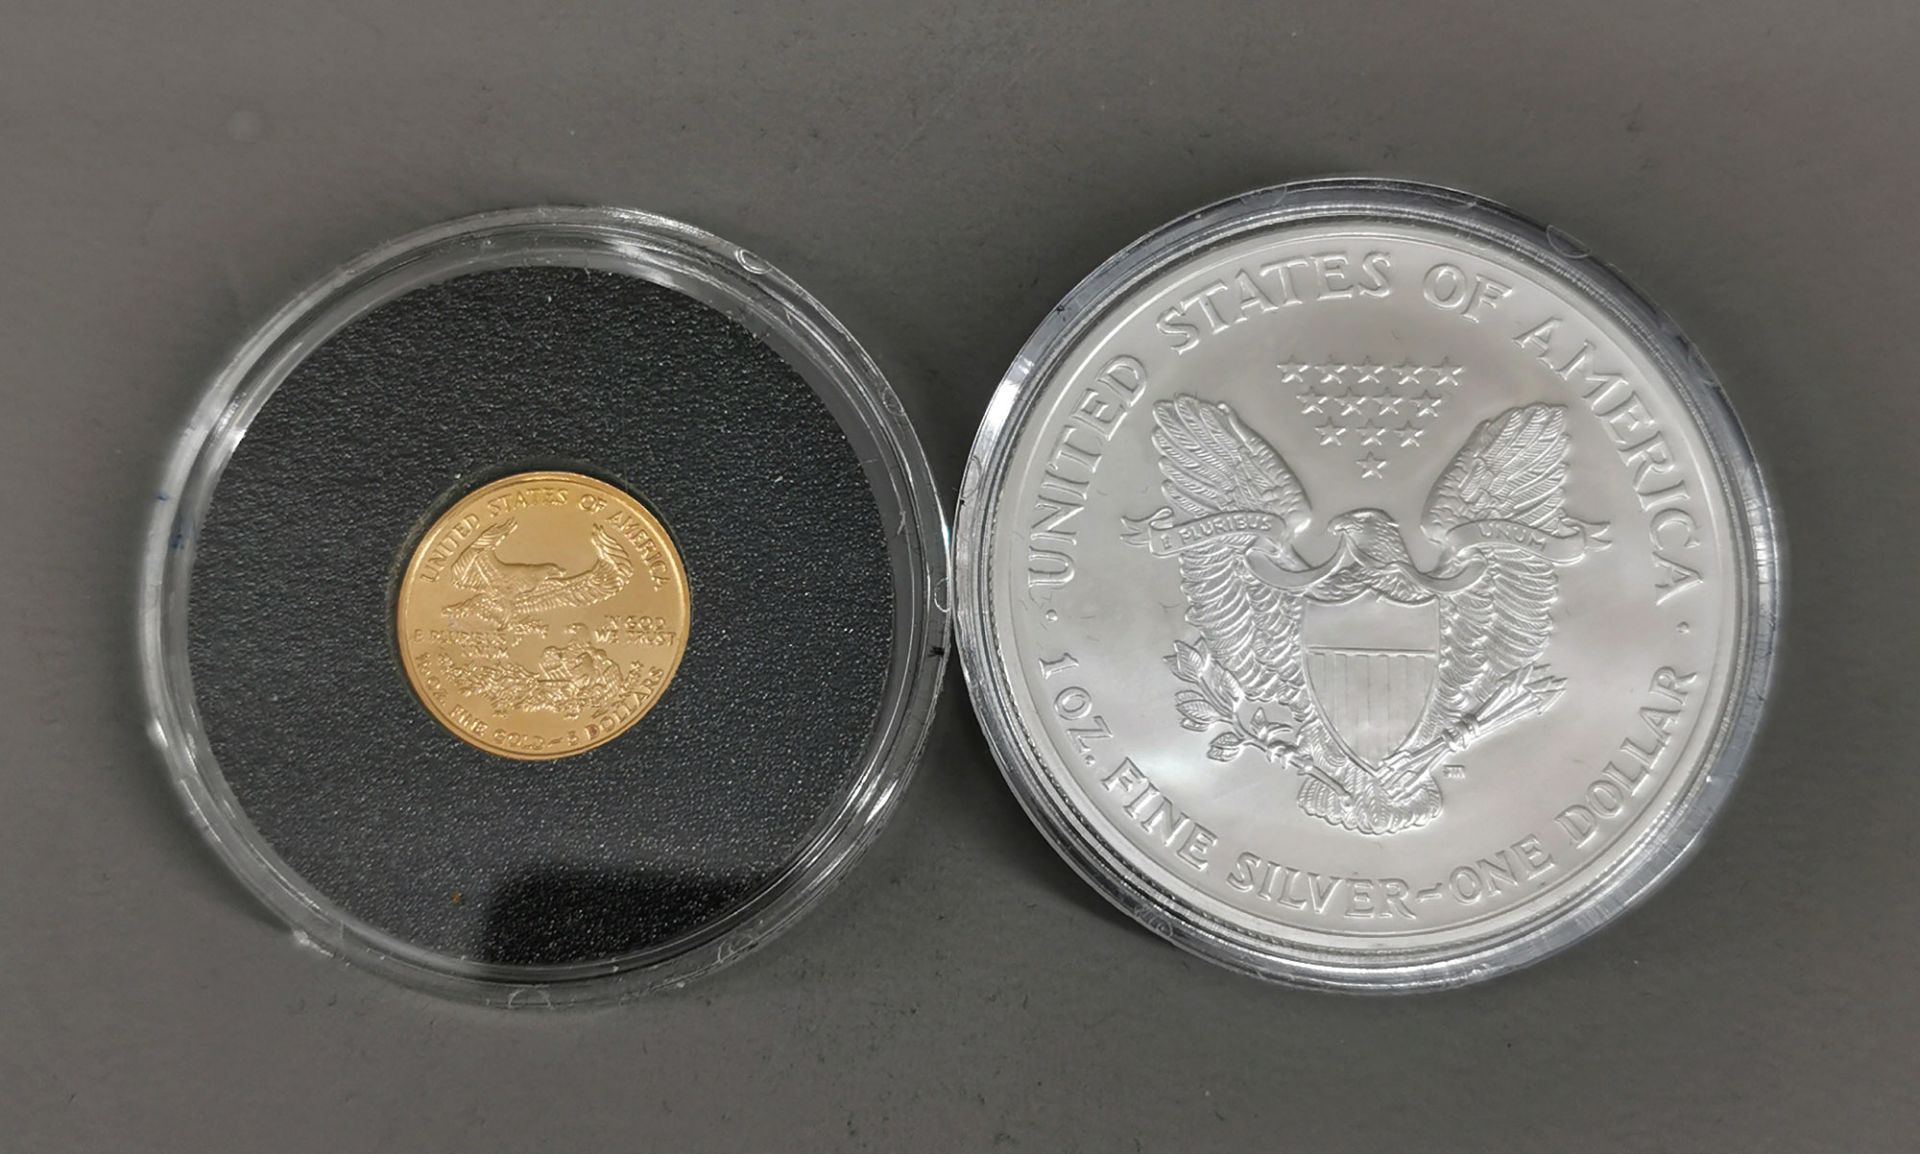 Goldmünze 5 Dollar und Silbermünze 1 Dollar 2003 - Bild 4 aus 4